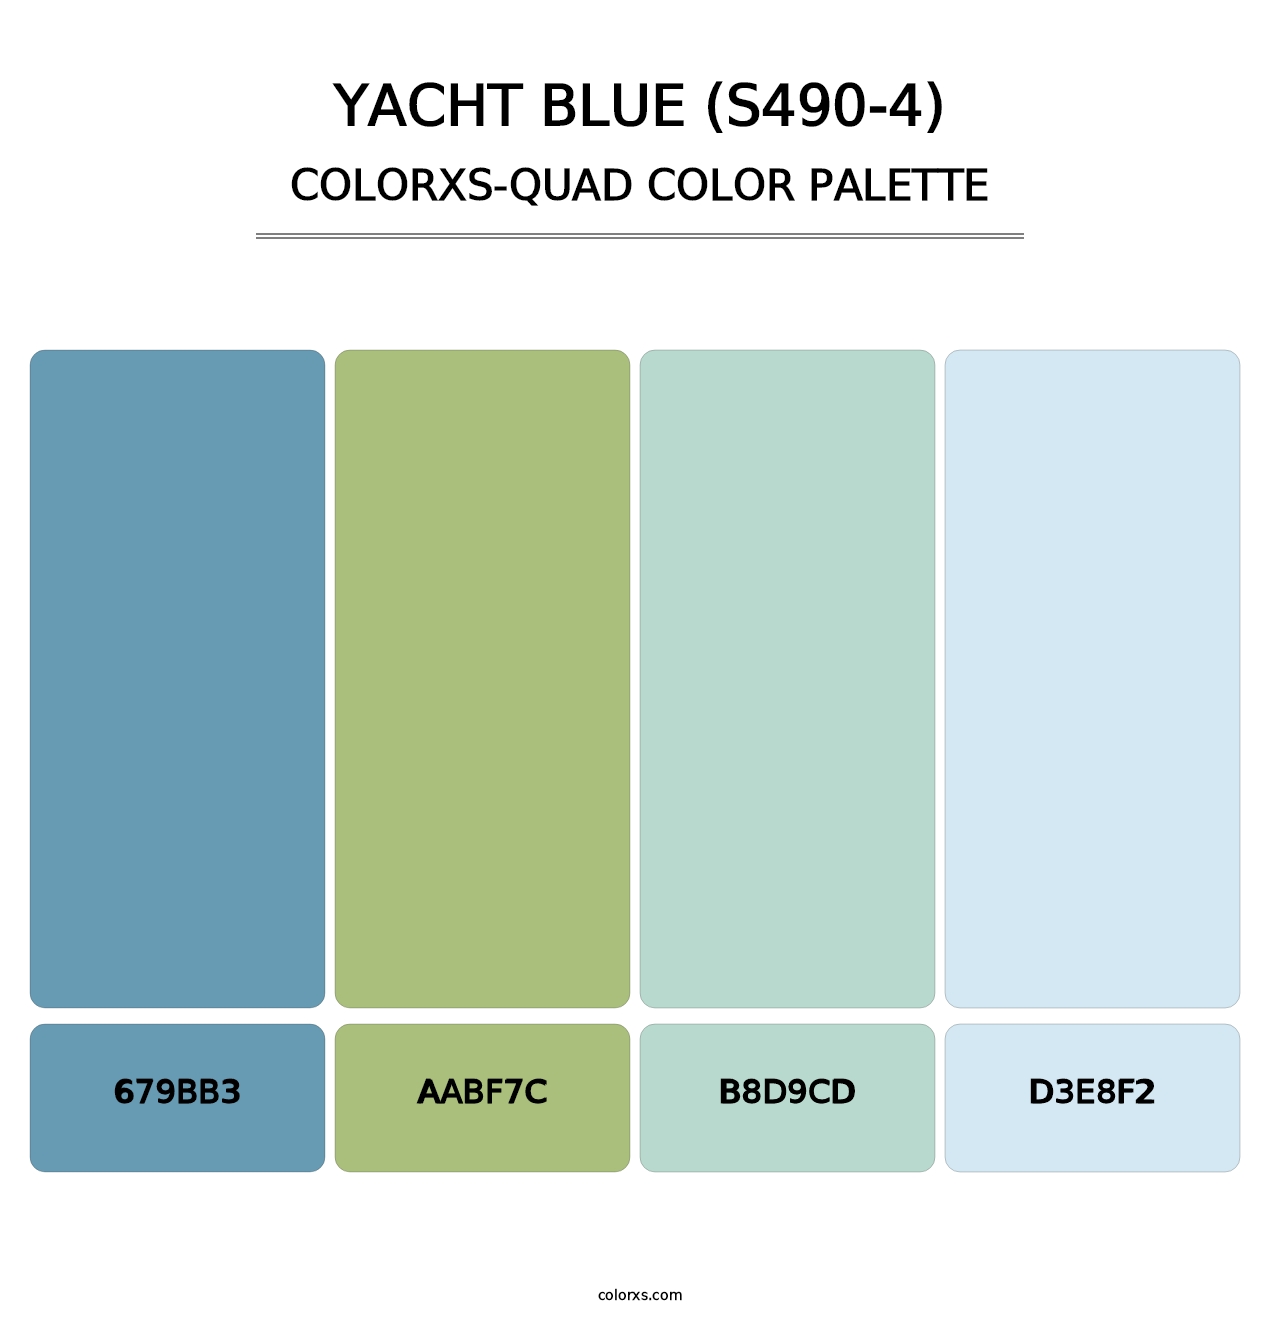 Yacht Blue (S490-4) - Colorxs Quad Palette